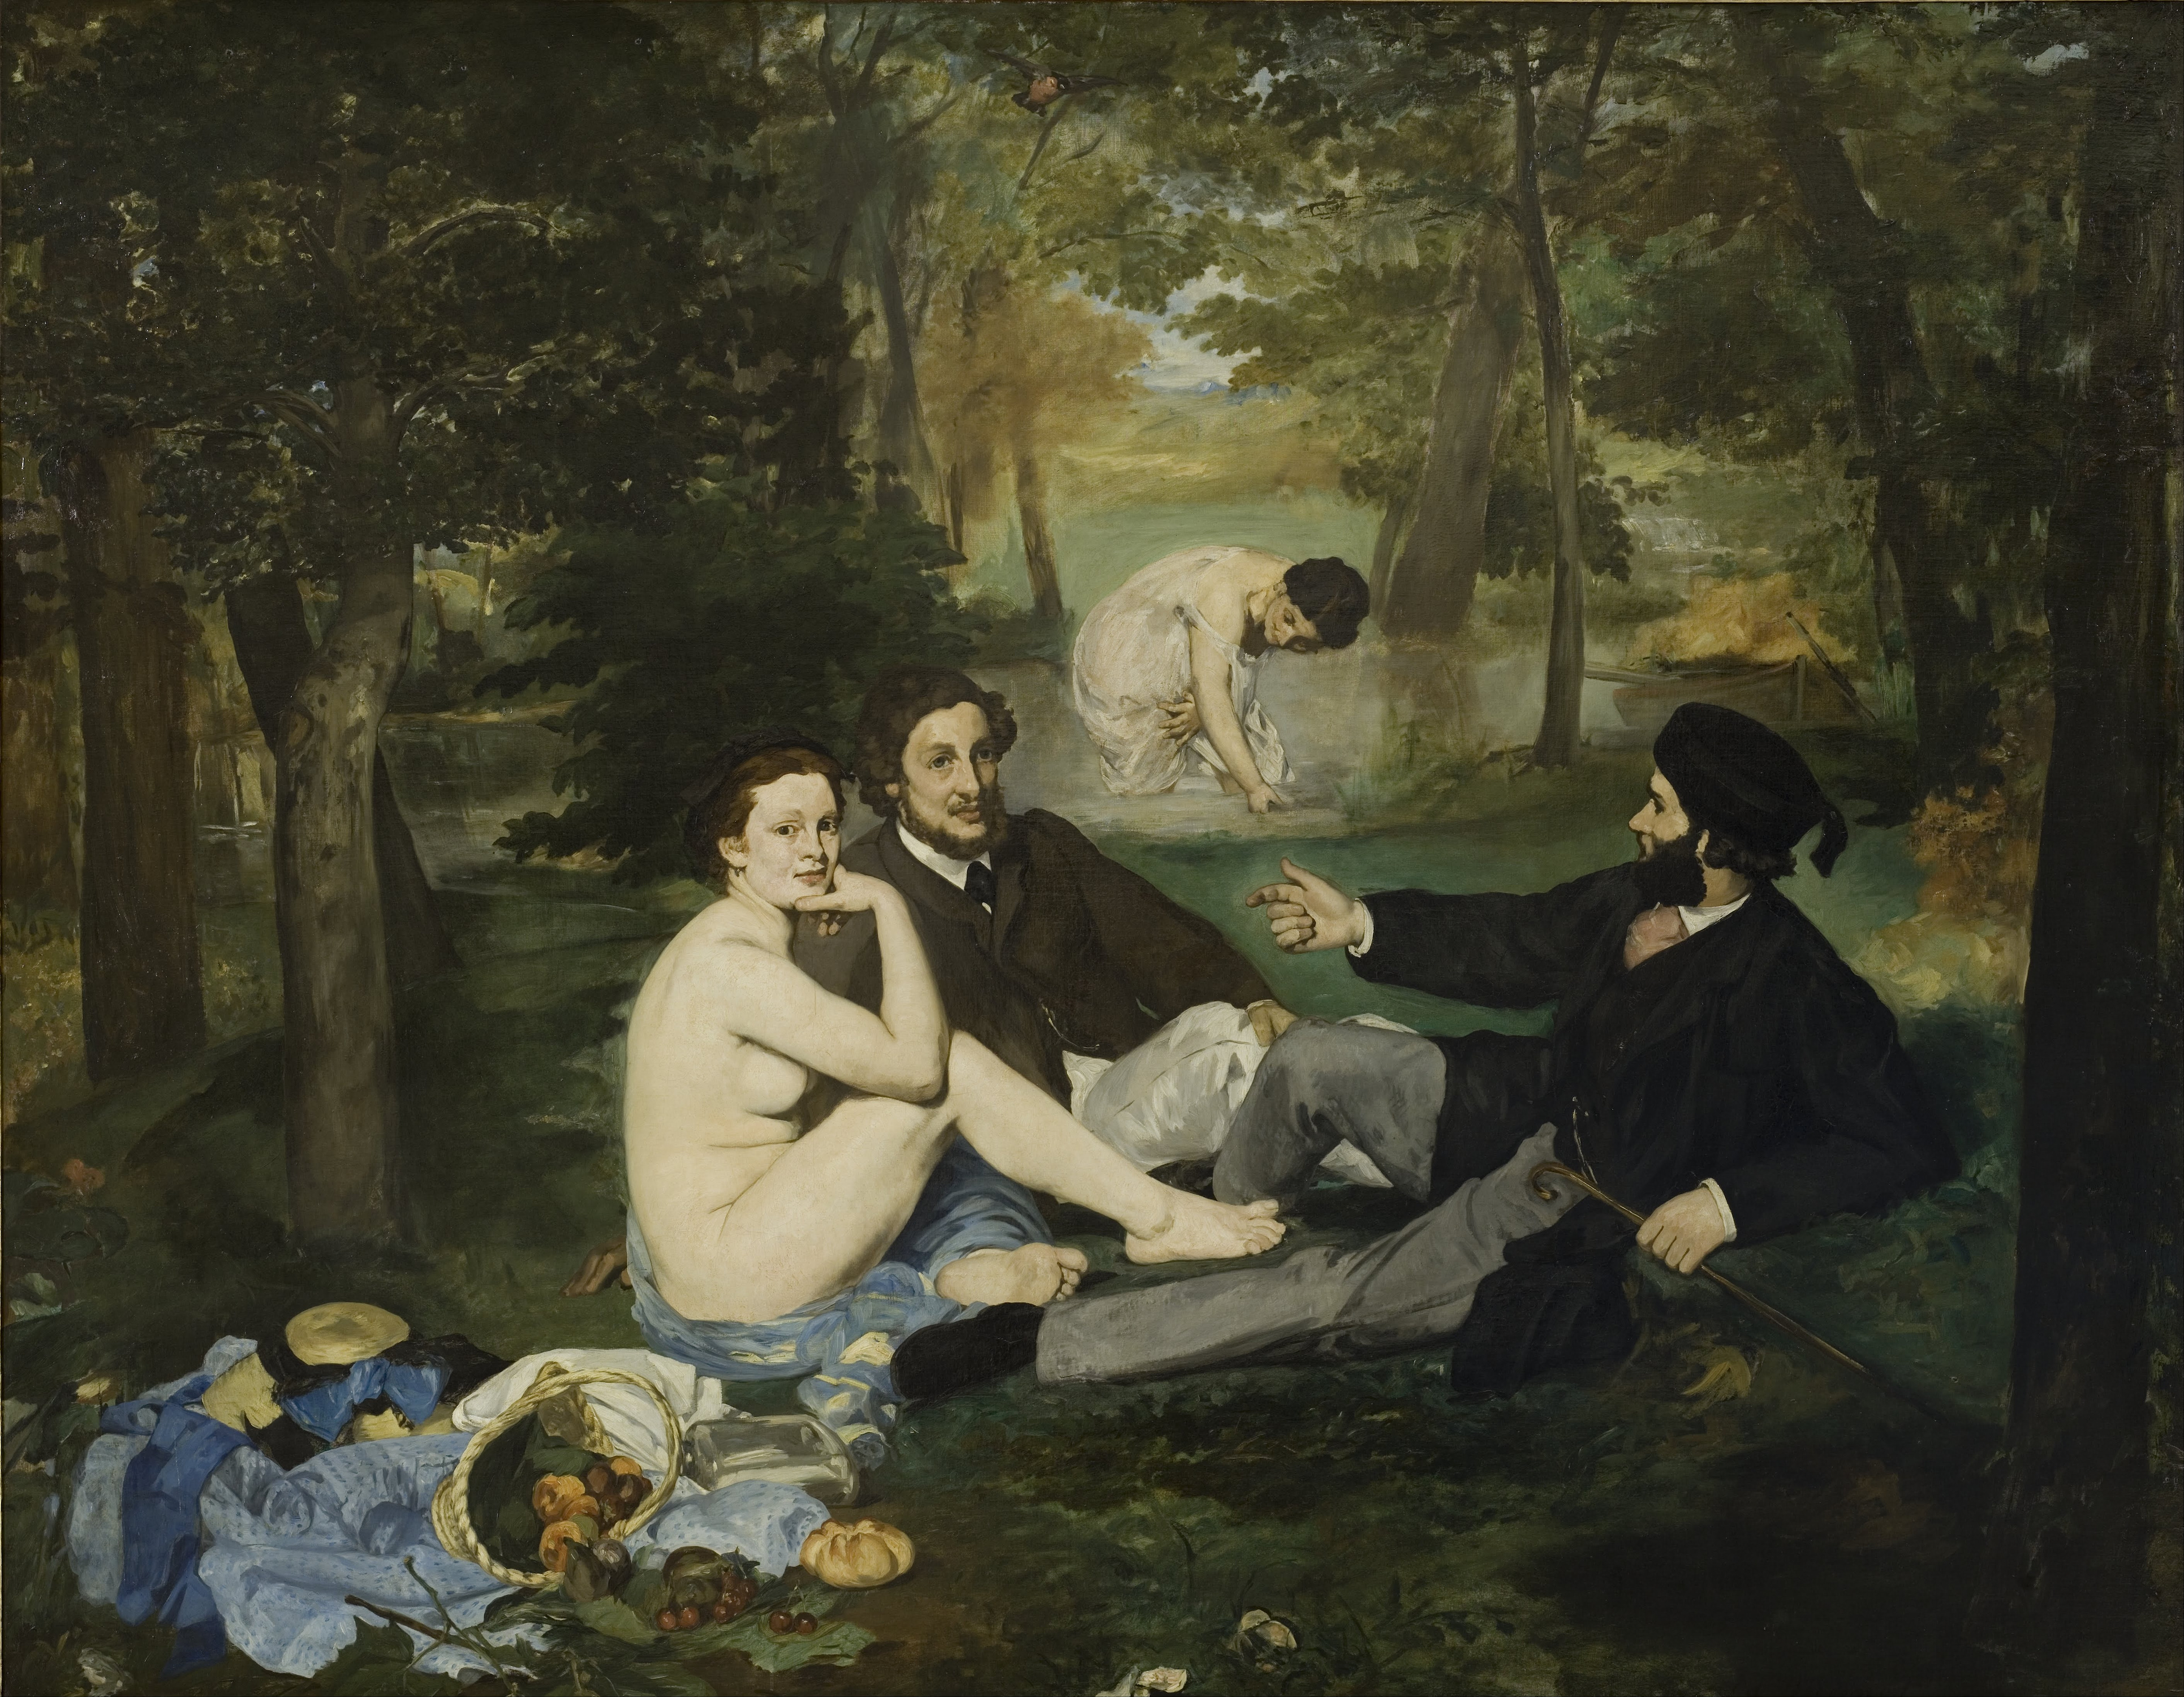 Frühstück im Grünen by Édouard Manet - 1862-1863 - 208 × 265 cm Musée d'Orsay